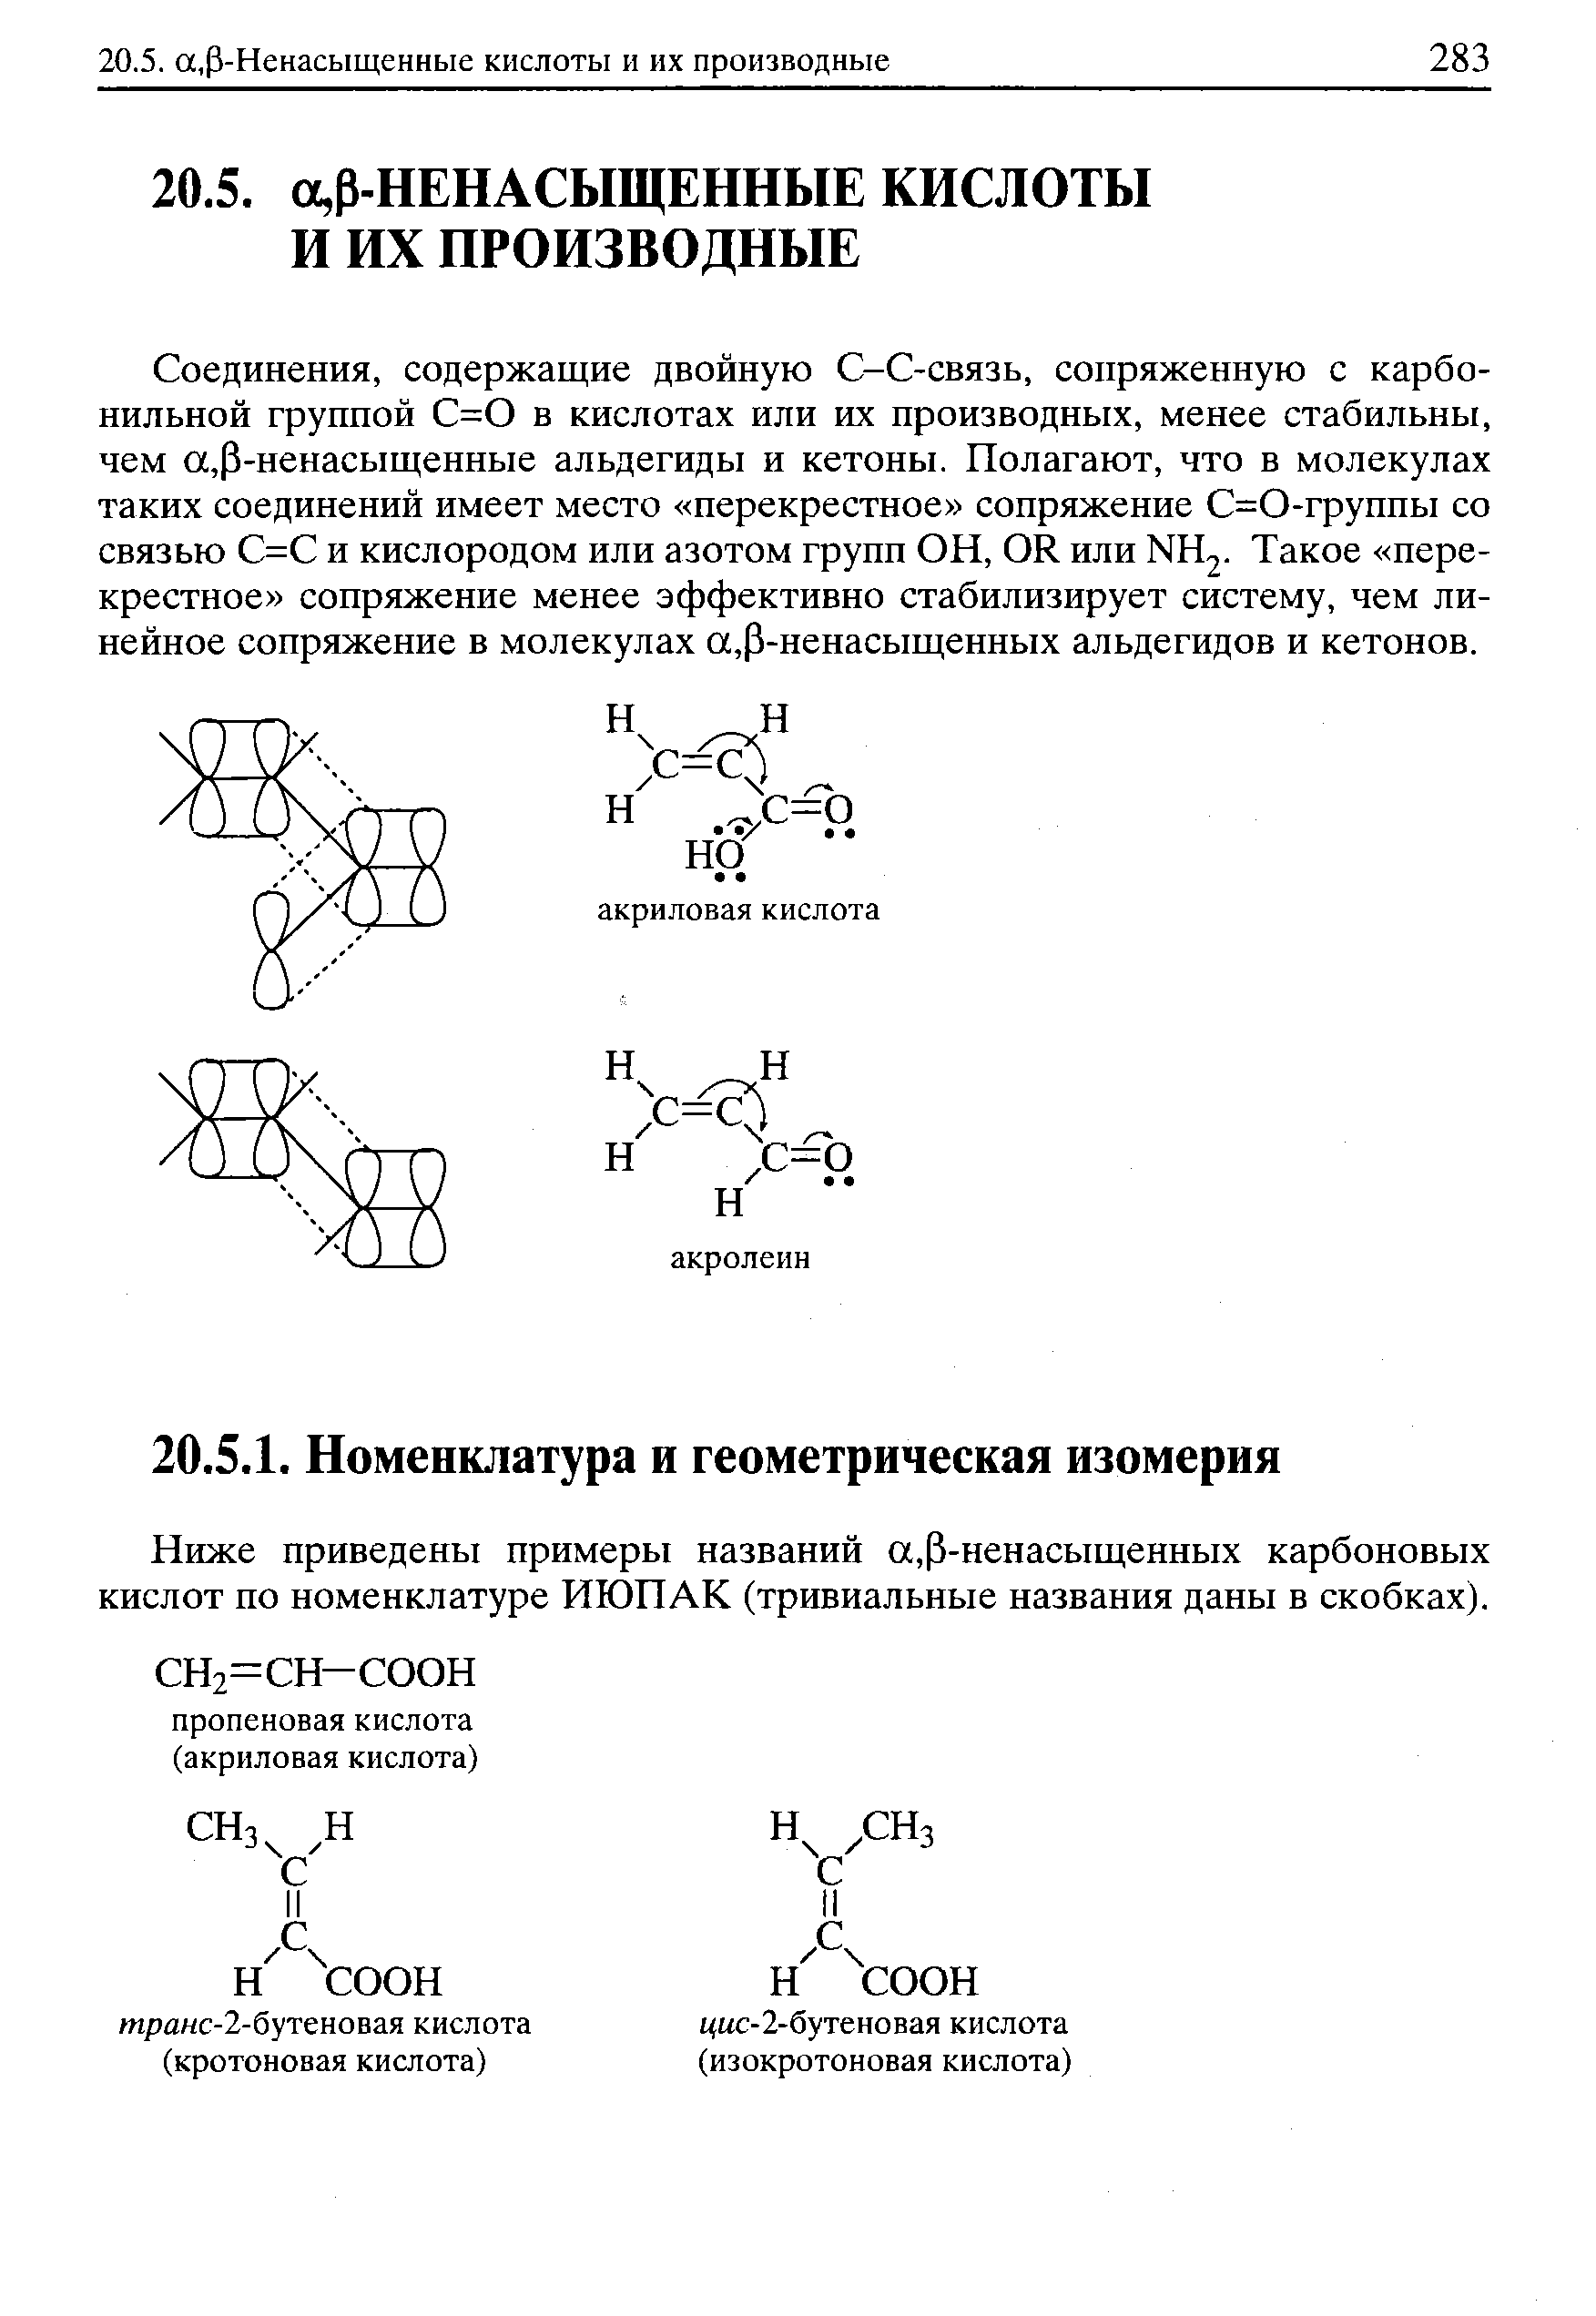 Соединения, содержащие двойную С-С-связь, сопряженную с карбонильной группой С=0 в кислотах или их производных, менее стабильны, чем а,Р-ненасыщенные альдегиды и кетоны. Полагают, что в молекулах таких соединений имеет место перекрестное сопряжение С=0-группы со связью С=С и кислородом или азотом групп ОН, ОК. или КН2. Такое перекрестное сопряжение менее эффективно стабилизирует систему, чем линейное сопряжение в молекулах а,Р-ненасыщенных альдегидов и кетонов.